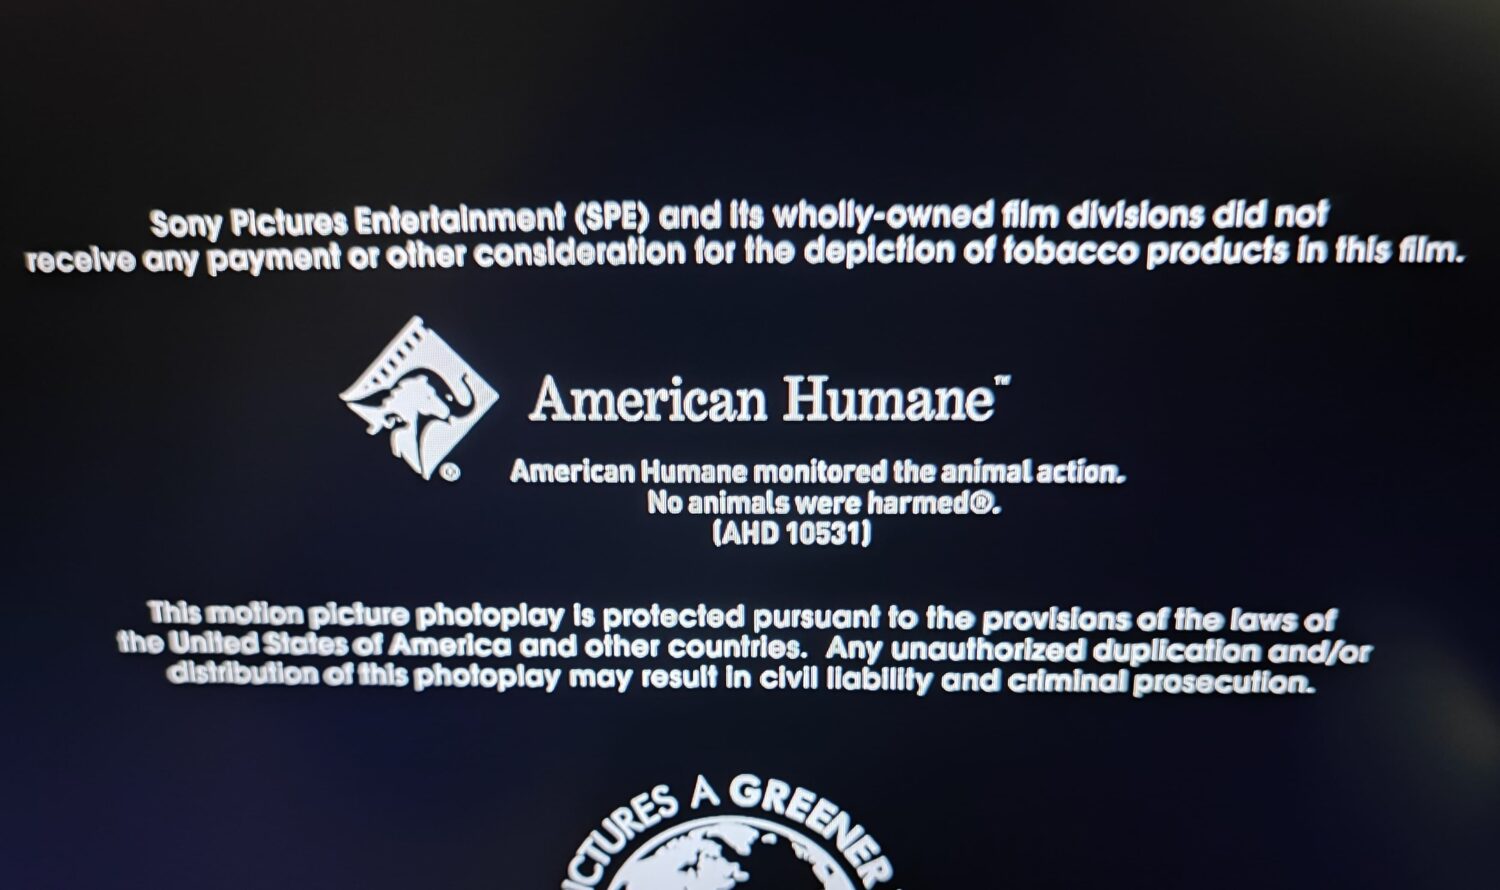 映画のエンドクレジットに表示される「American Humane」の「No animals were harmed」の表記